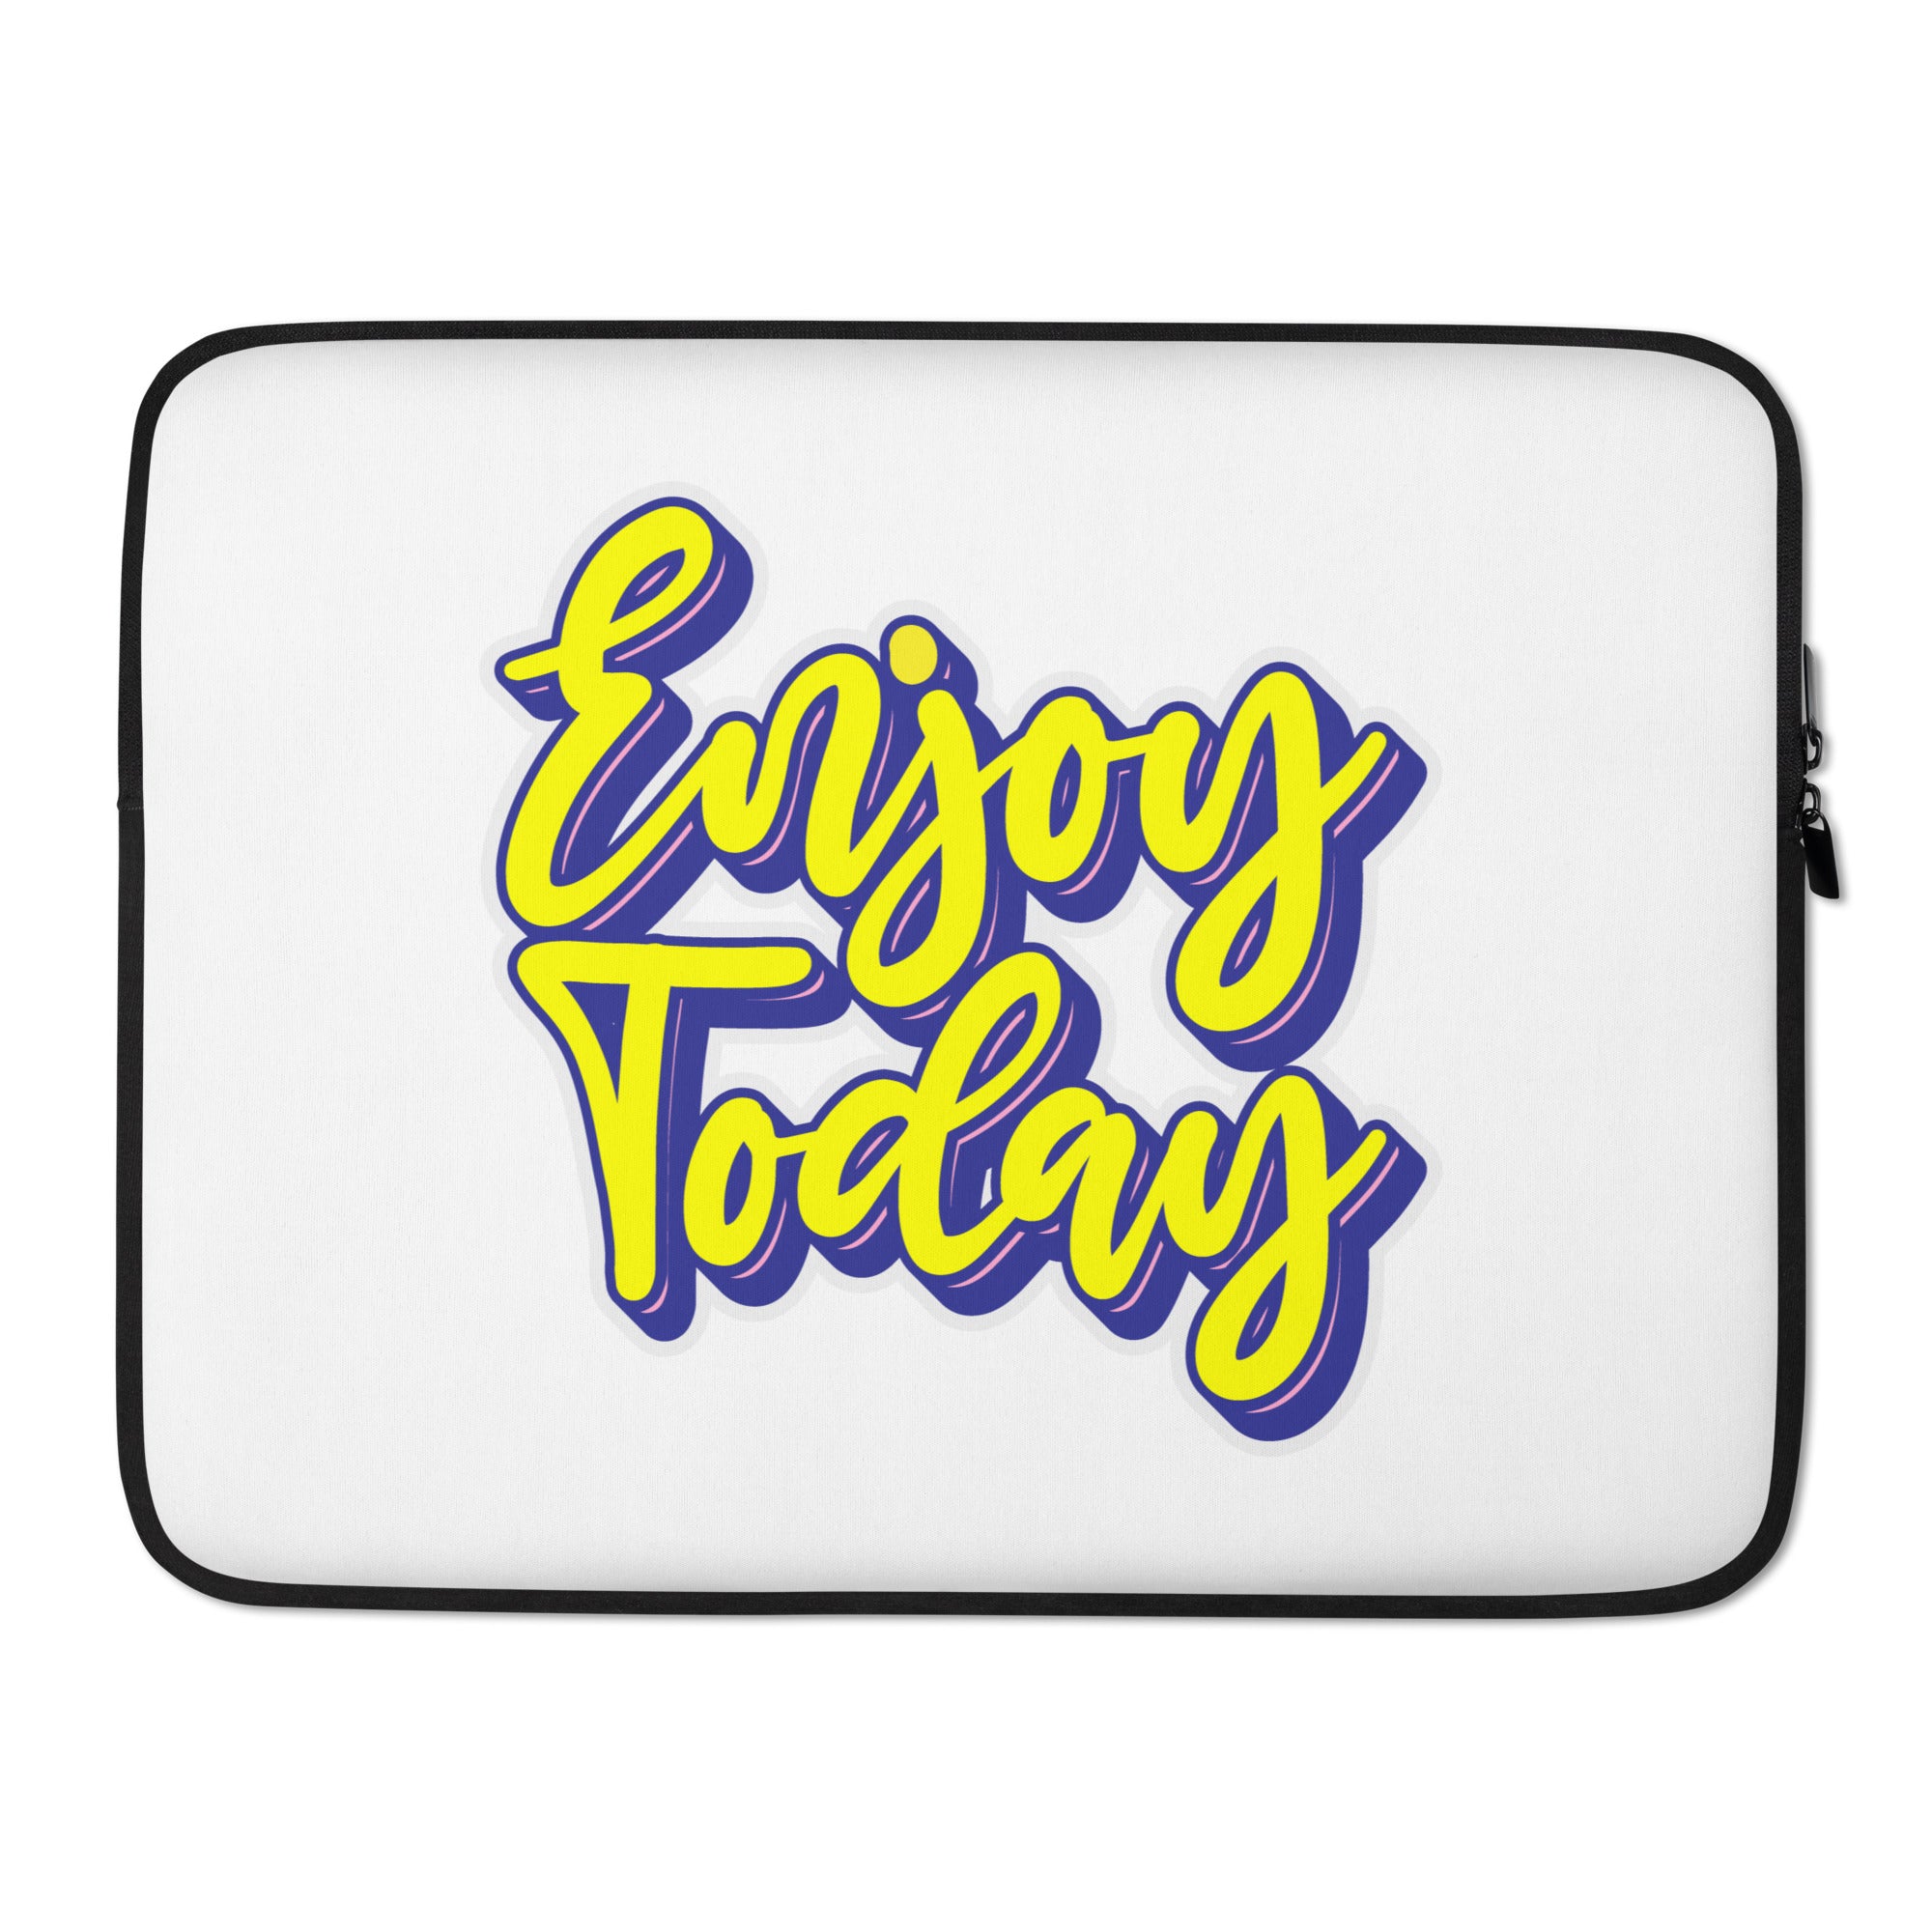 Enjoy Today - Laptop Sleeve